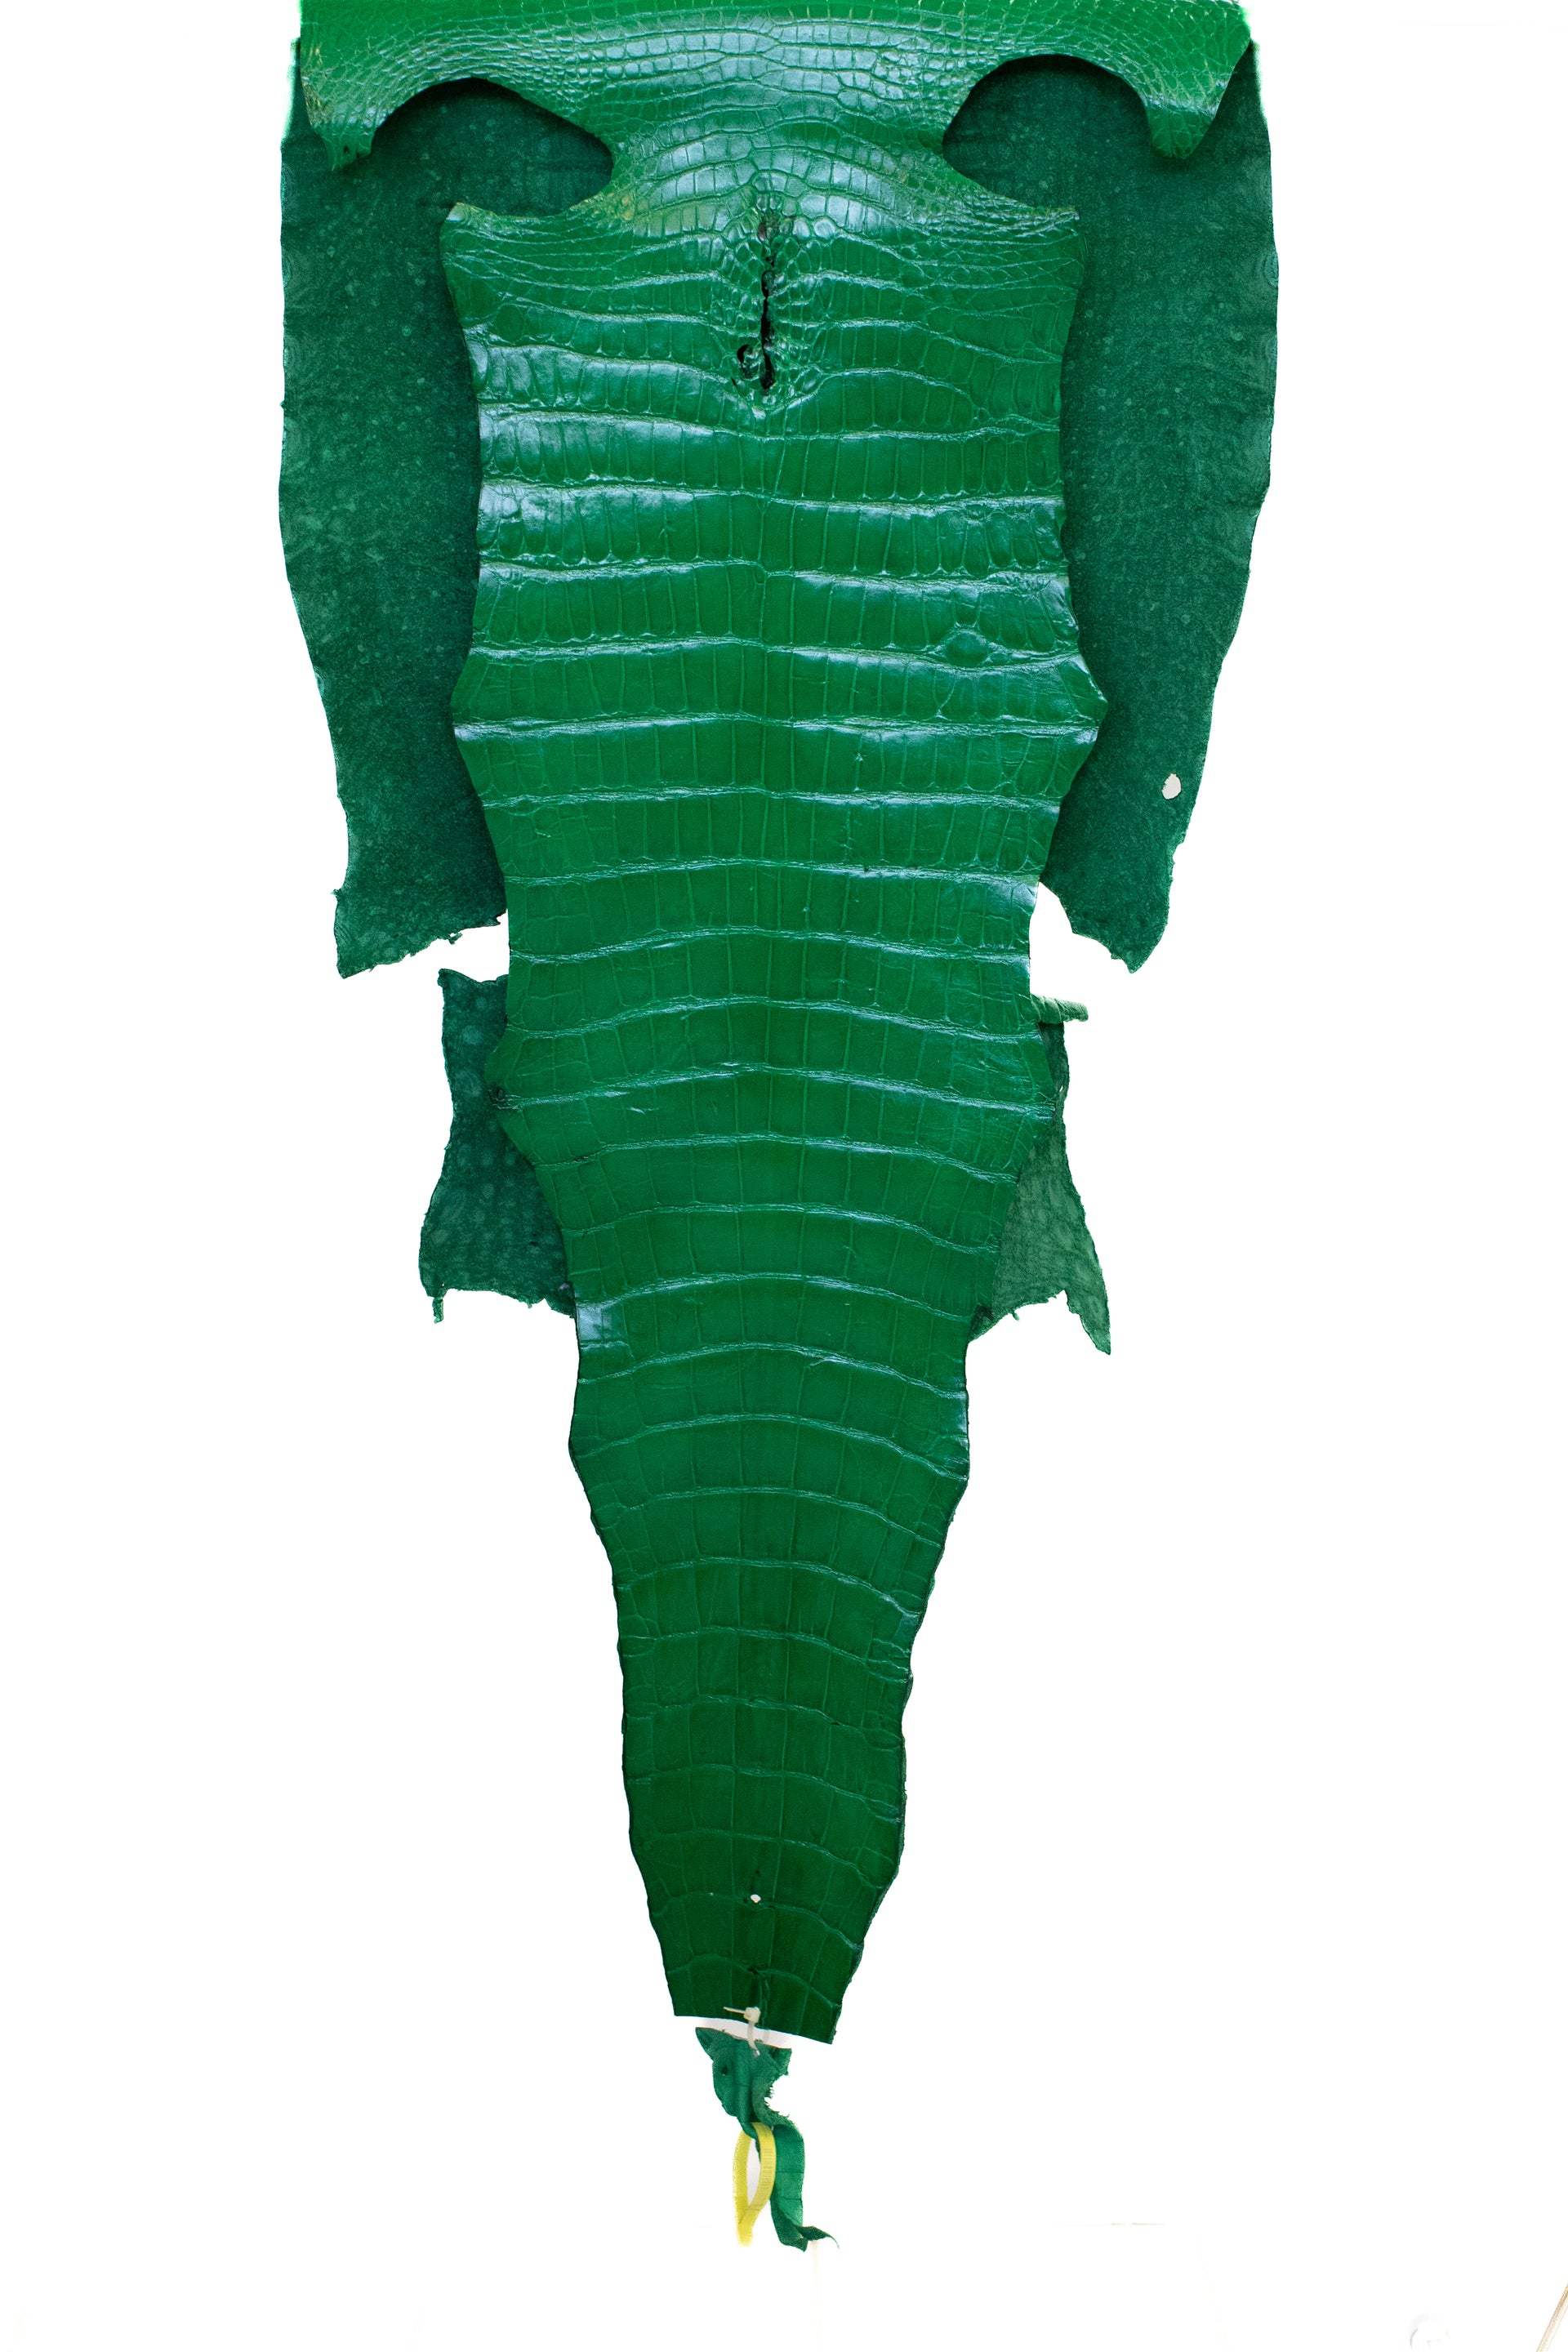 56 cm Grade 2/3 Libra Green Millennium Wild American Alligator Leather - Tag: LA22-0004562